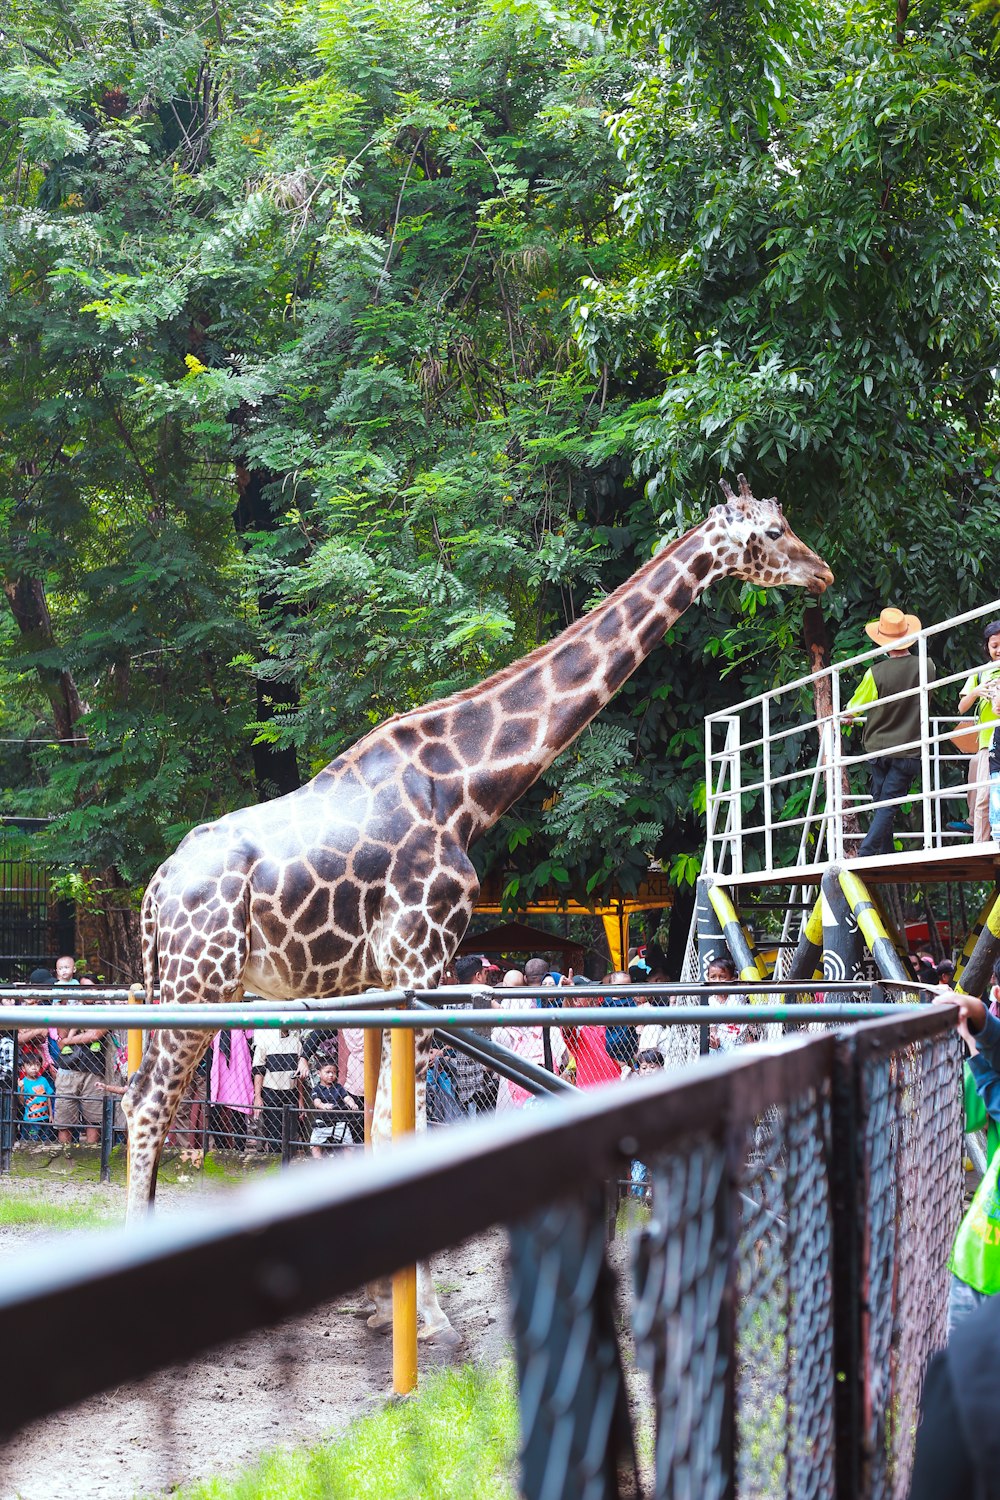 Eine Giraffe steht neben einem hohen Metallzaun